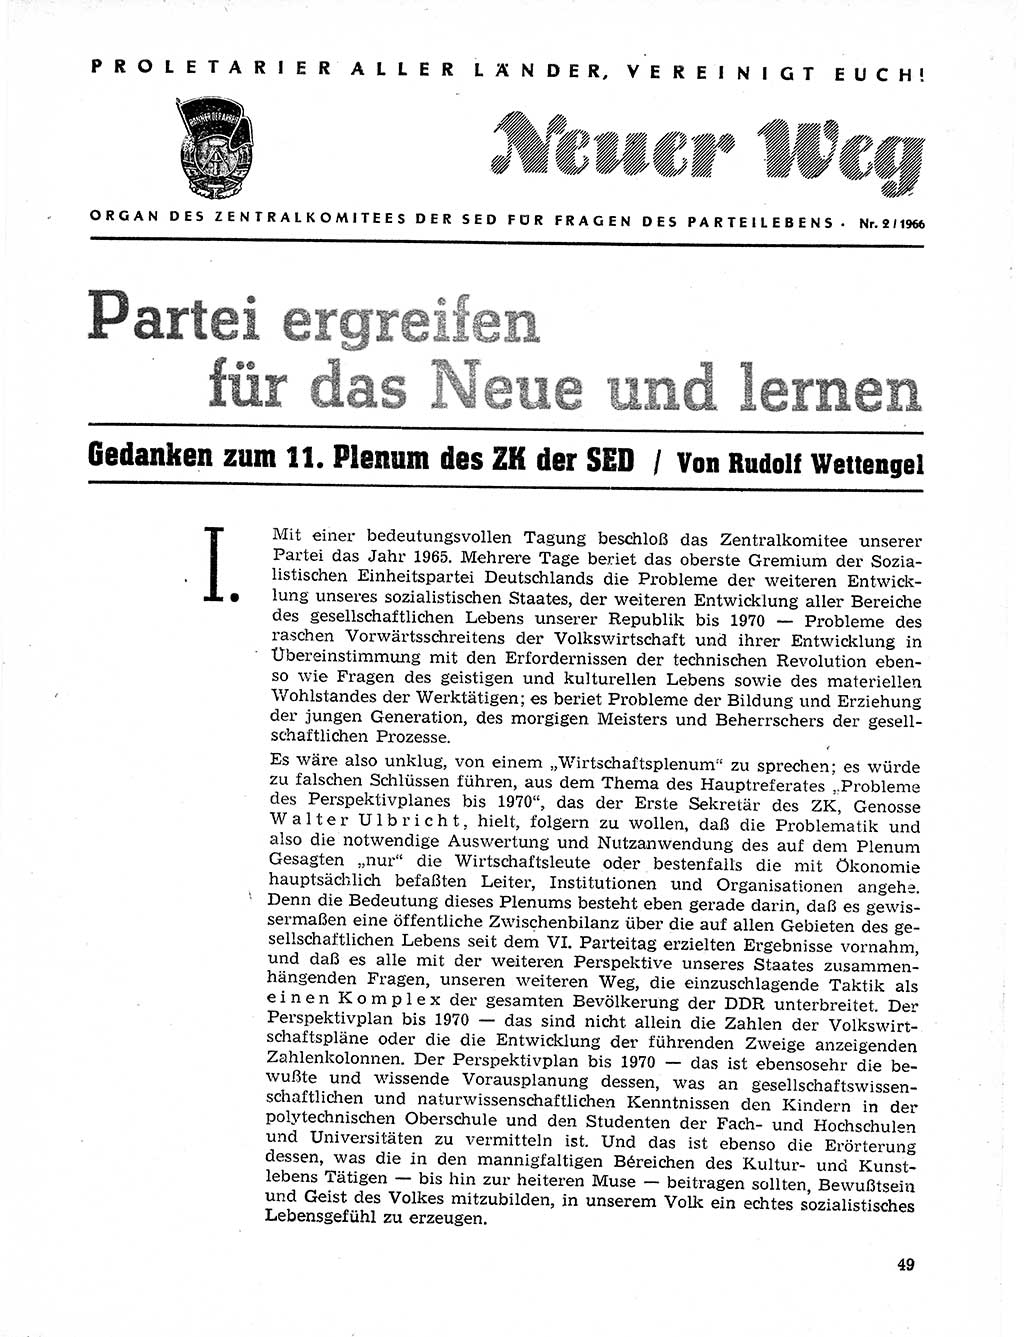 Neuer Weg (NW), Organ des Zentralkomitees (ZK) der SED (Sozialistische Einheitspartei Deutschlands) für Fragen des Parteilebens, 21. Jahrgang [Deutsche Demokratische Republik (DDR)] 1966, Seite 49 (NW ZK SED DDR 1966, S. 49)